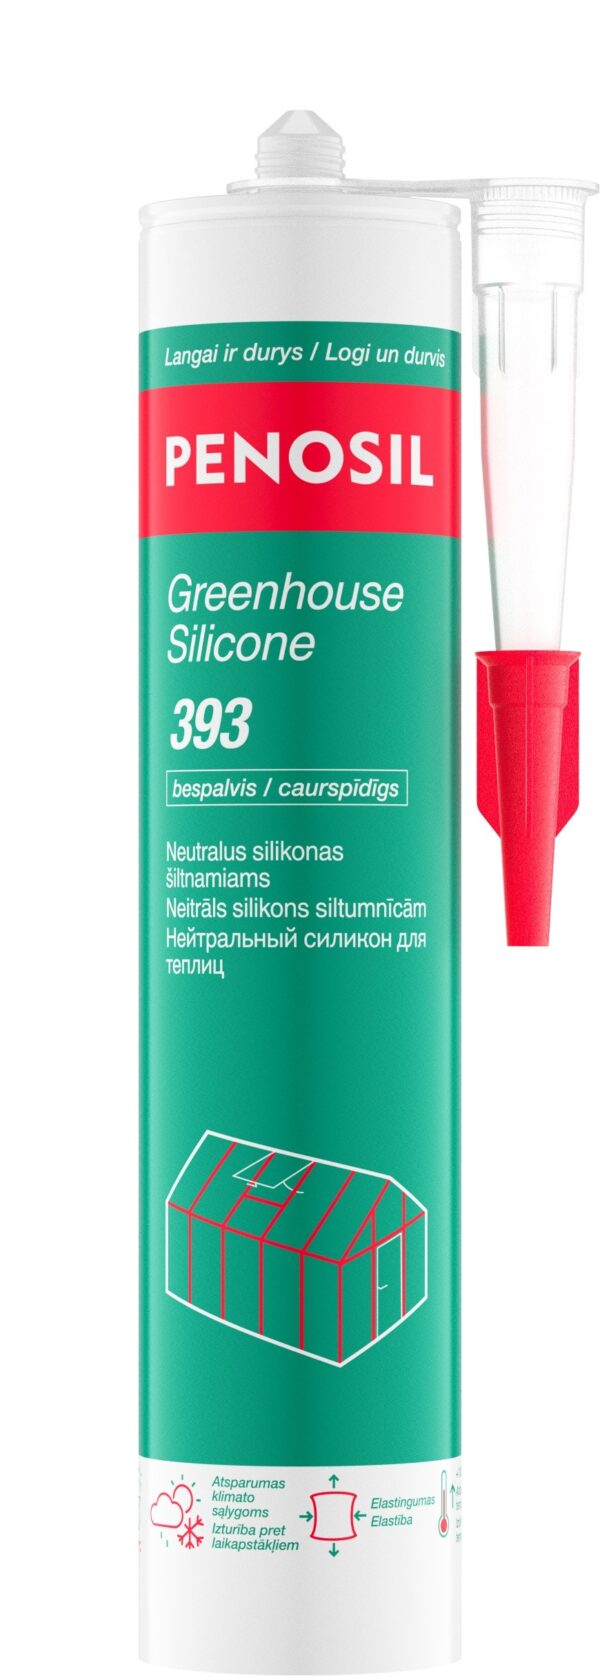 PENOSIL GreenHouse Silicone 393 neutralus silikonas šiltnamiams